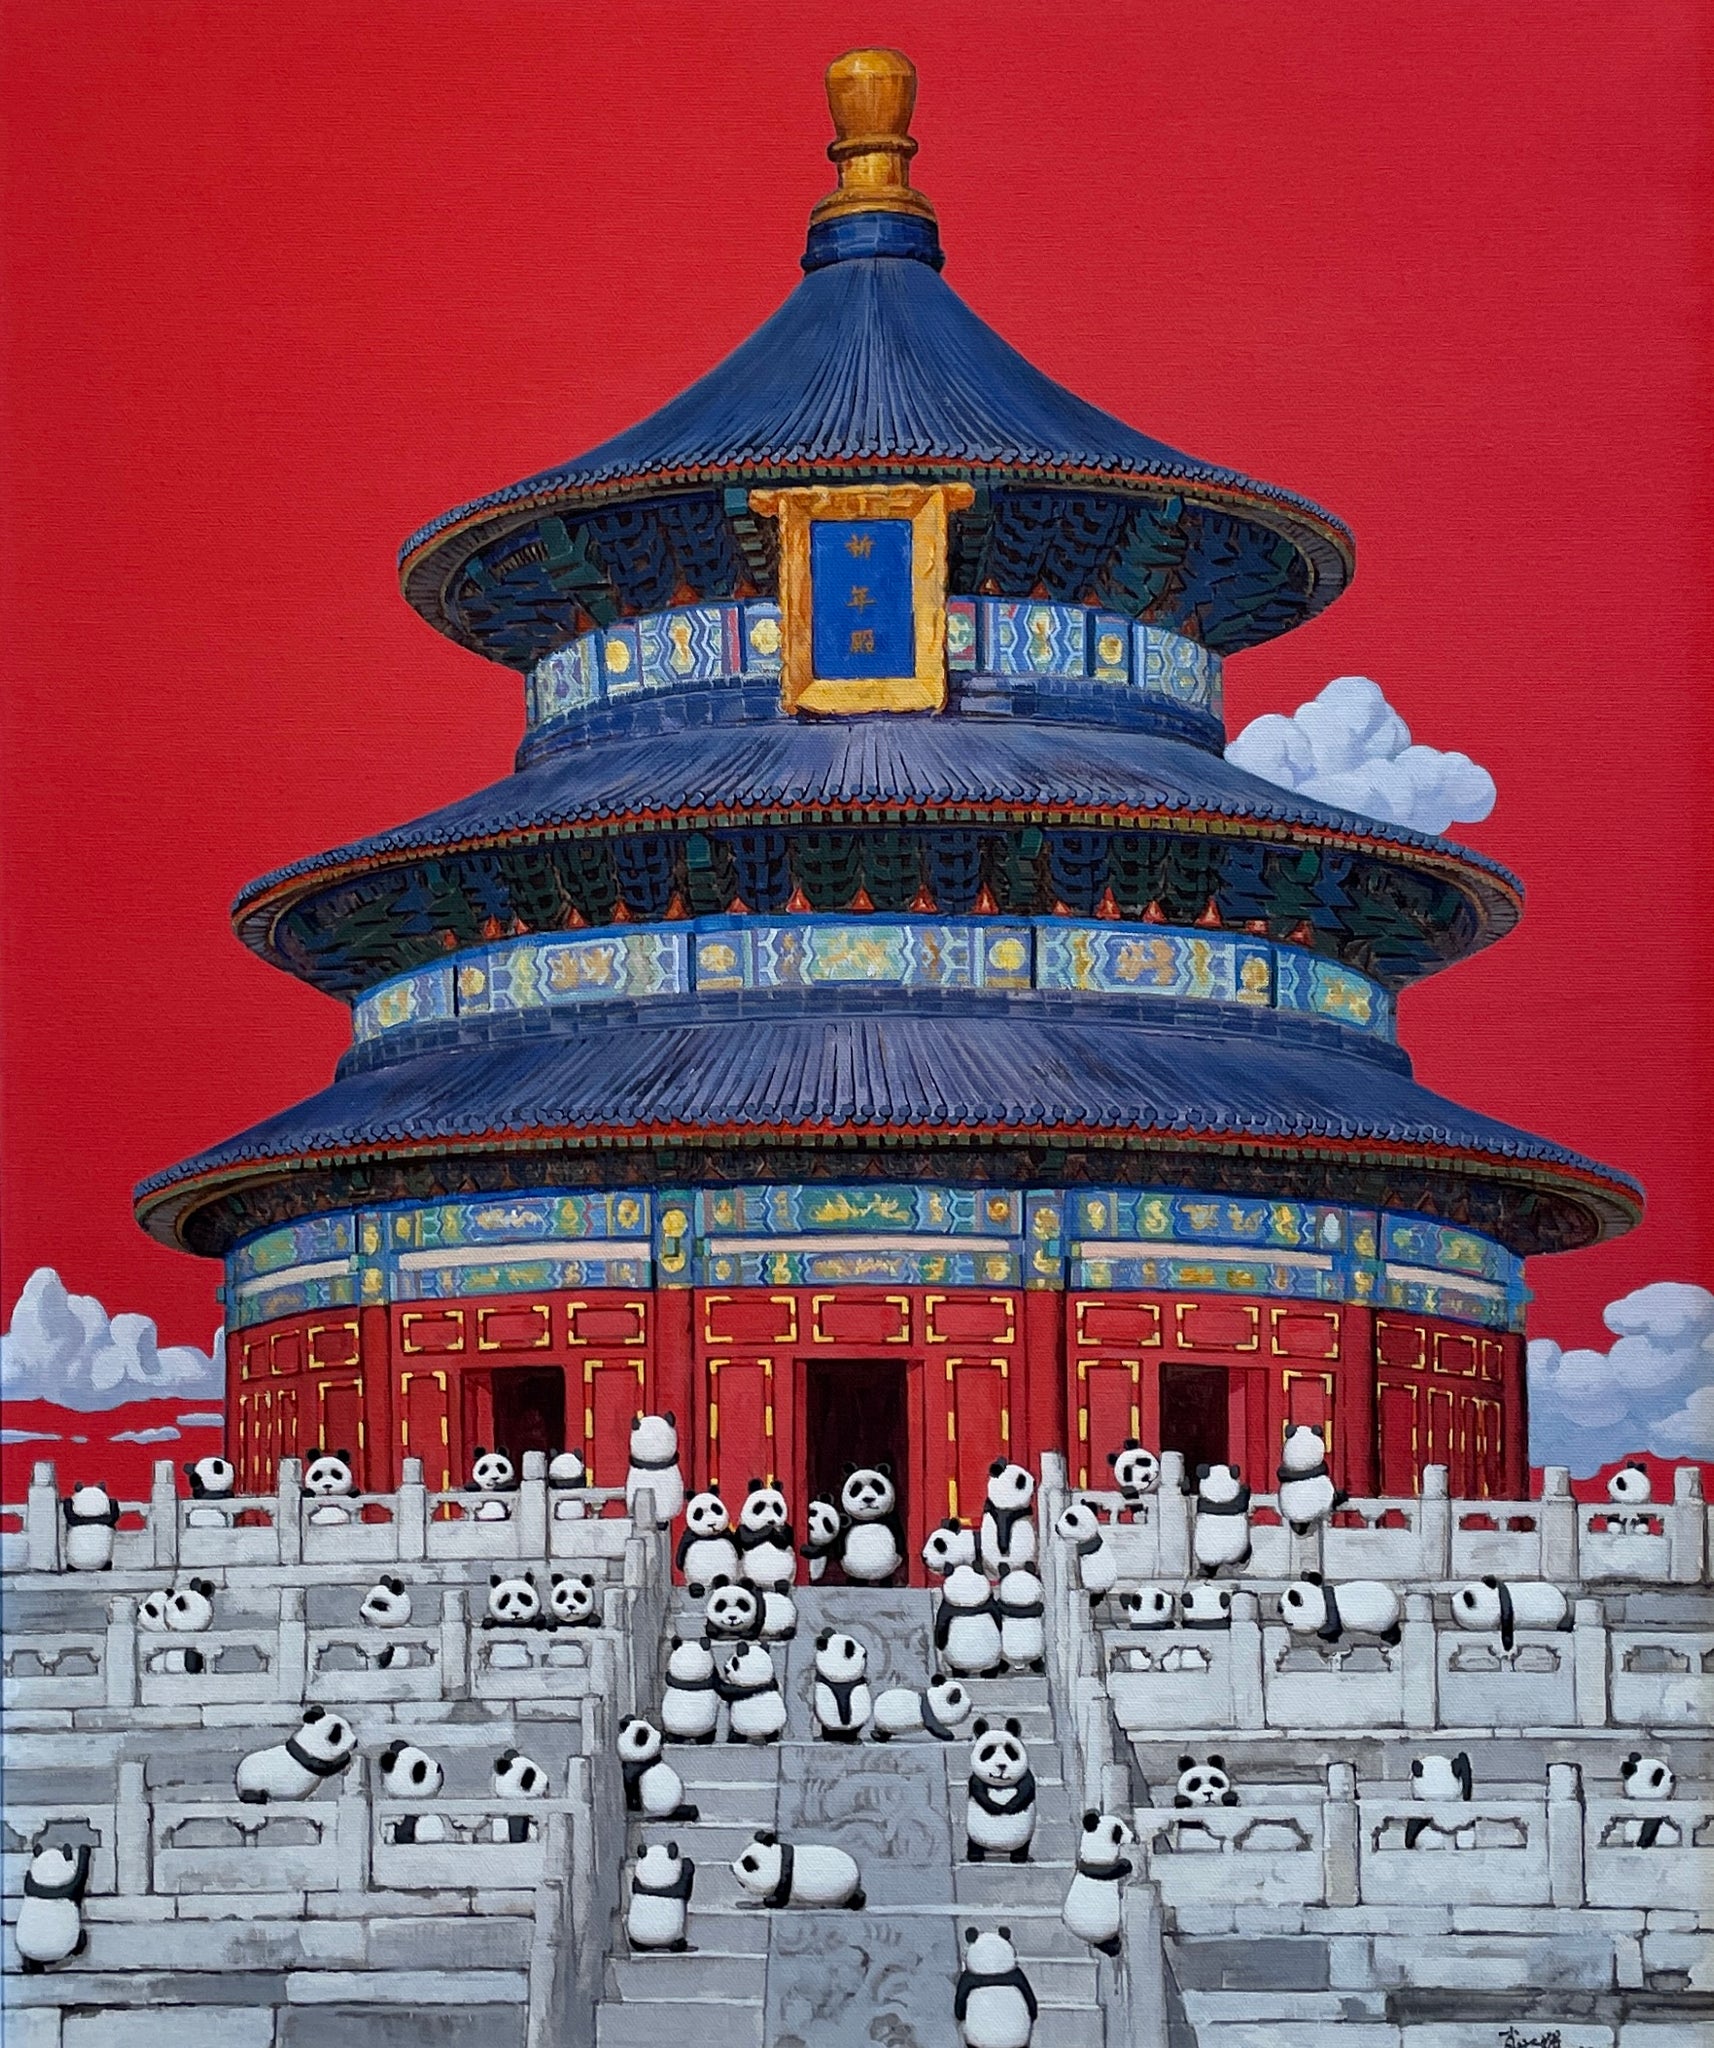 Panda Series by Xiao Shui Hui